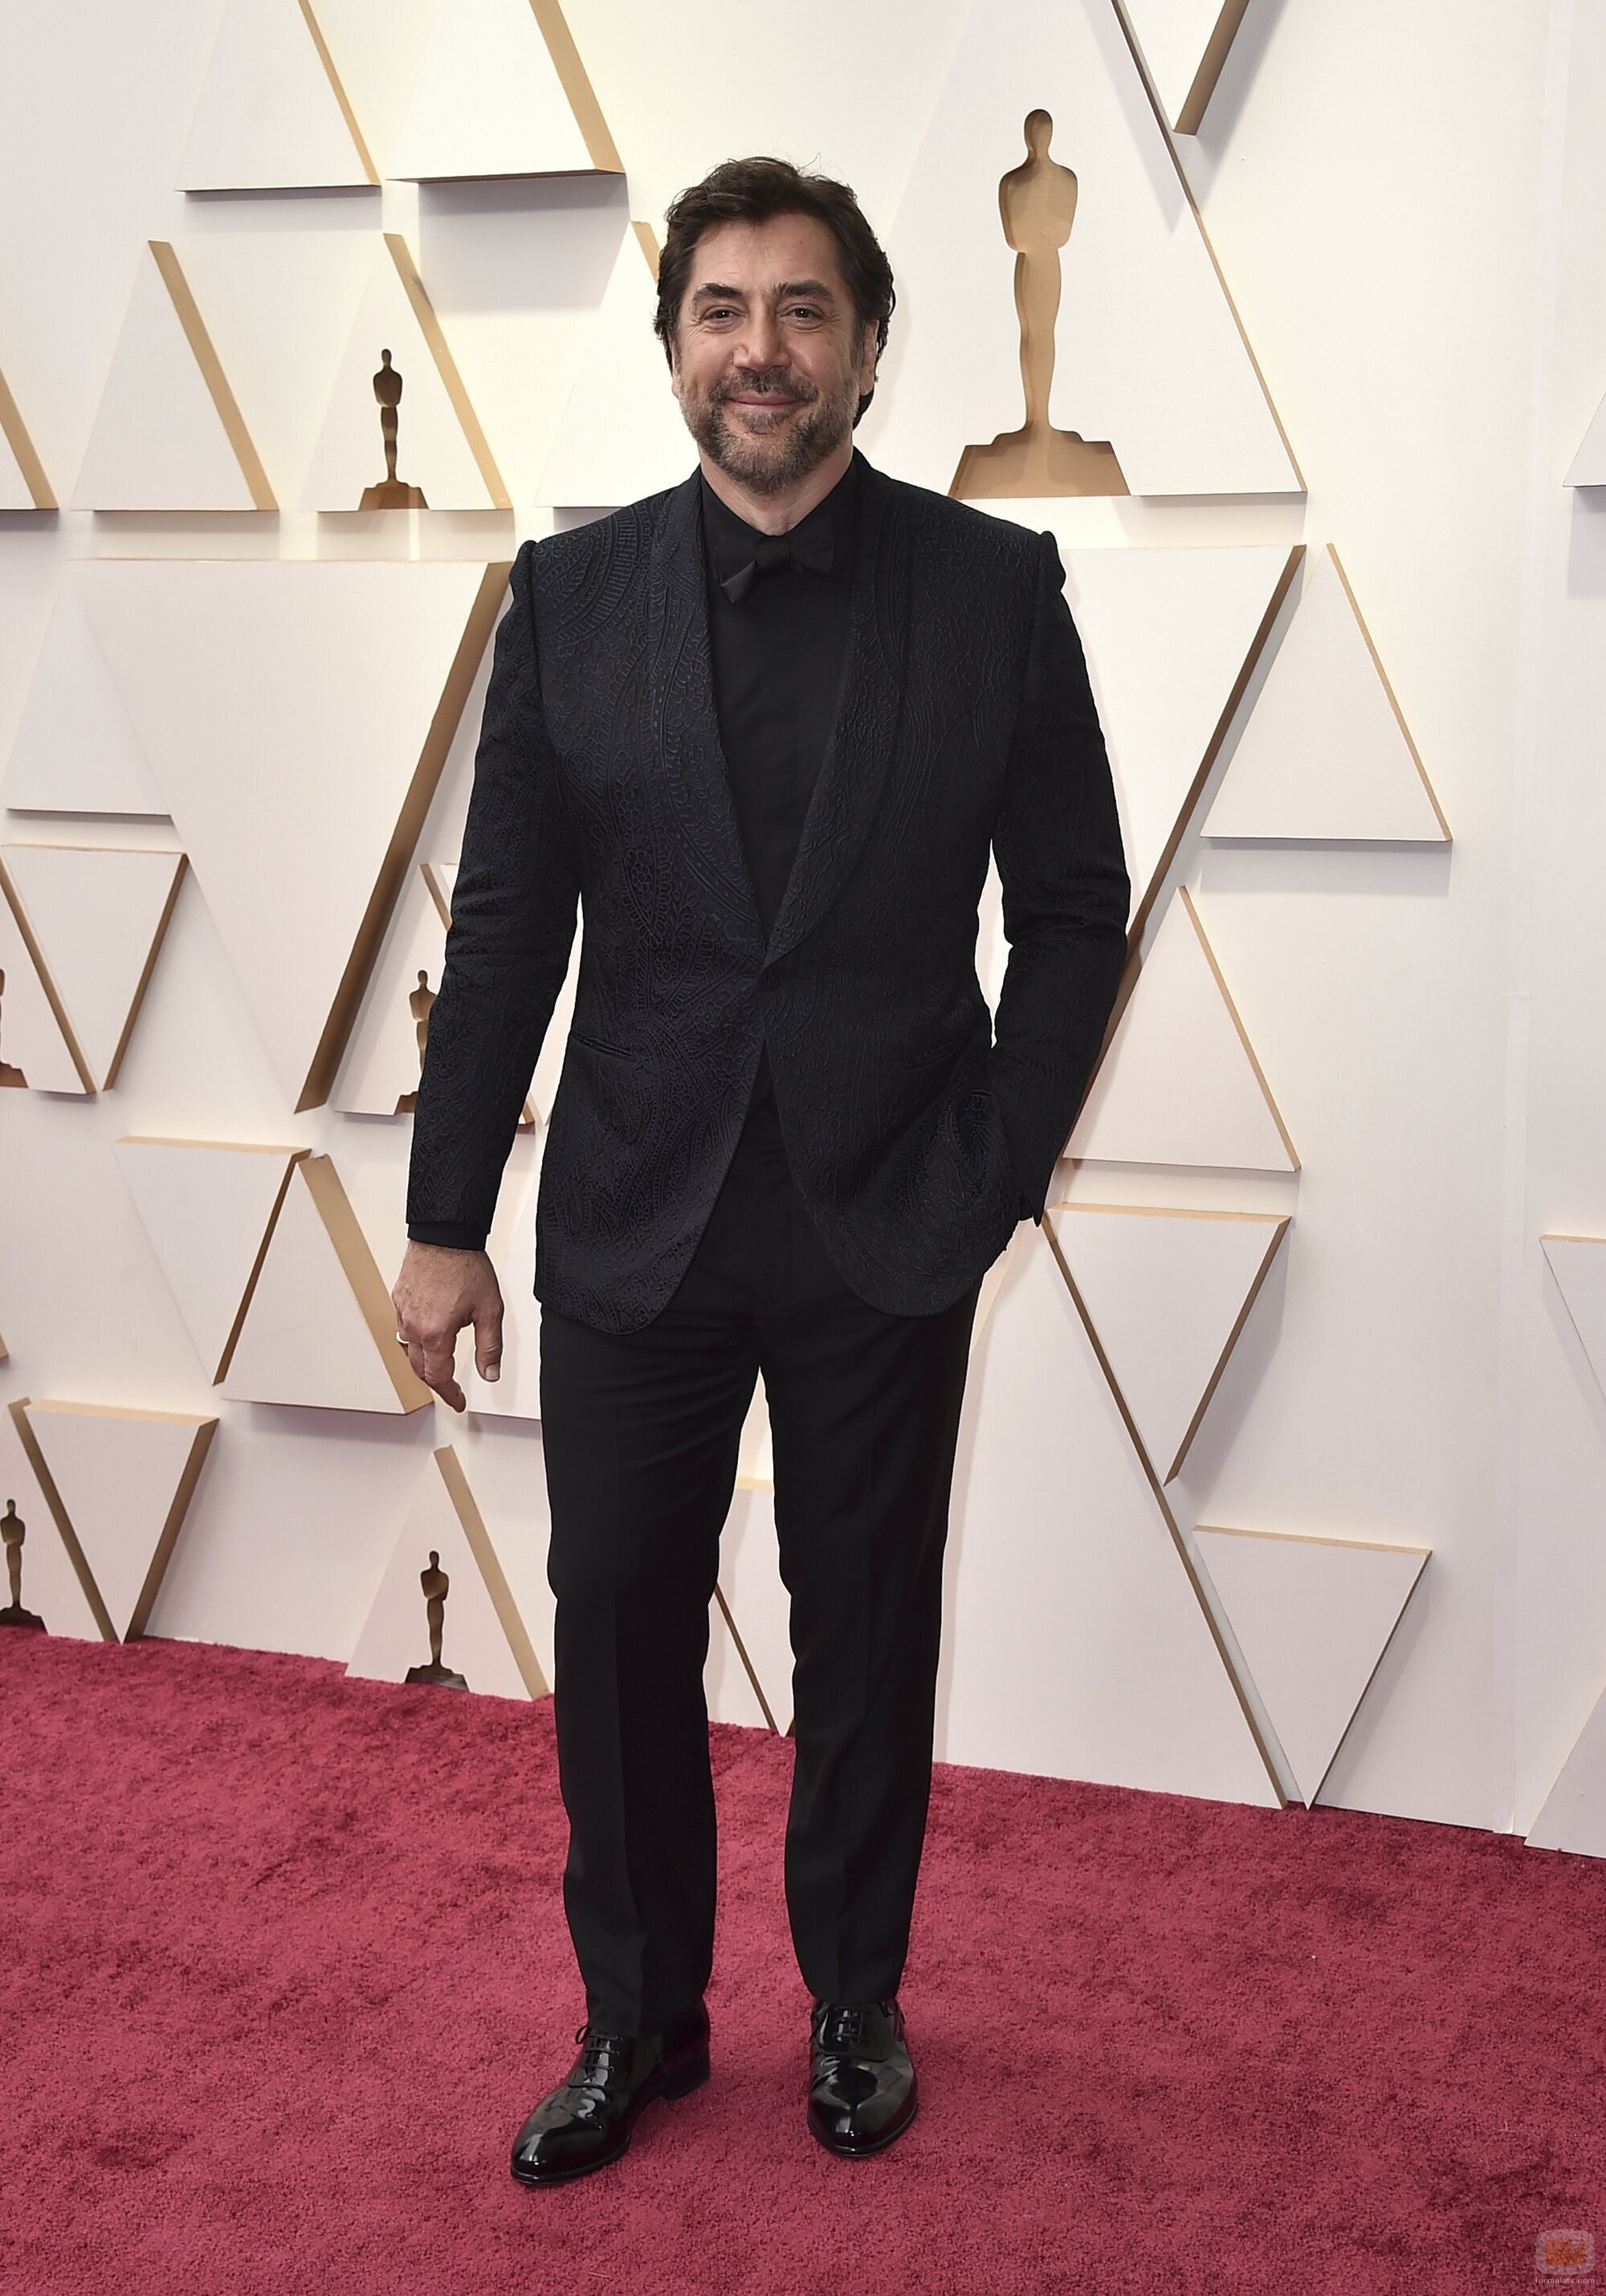 Javier Bardem posa en la alfombra roja de los Oscar 2022